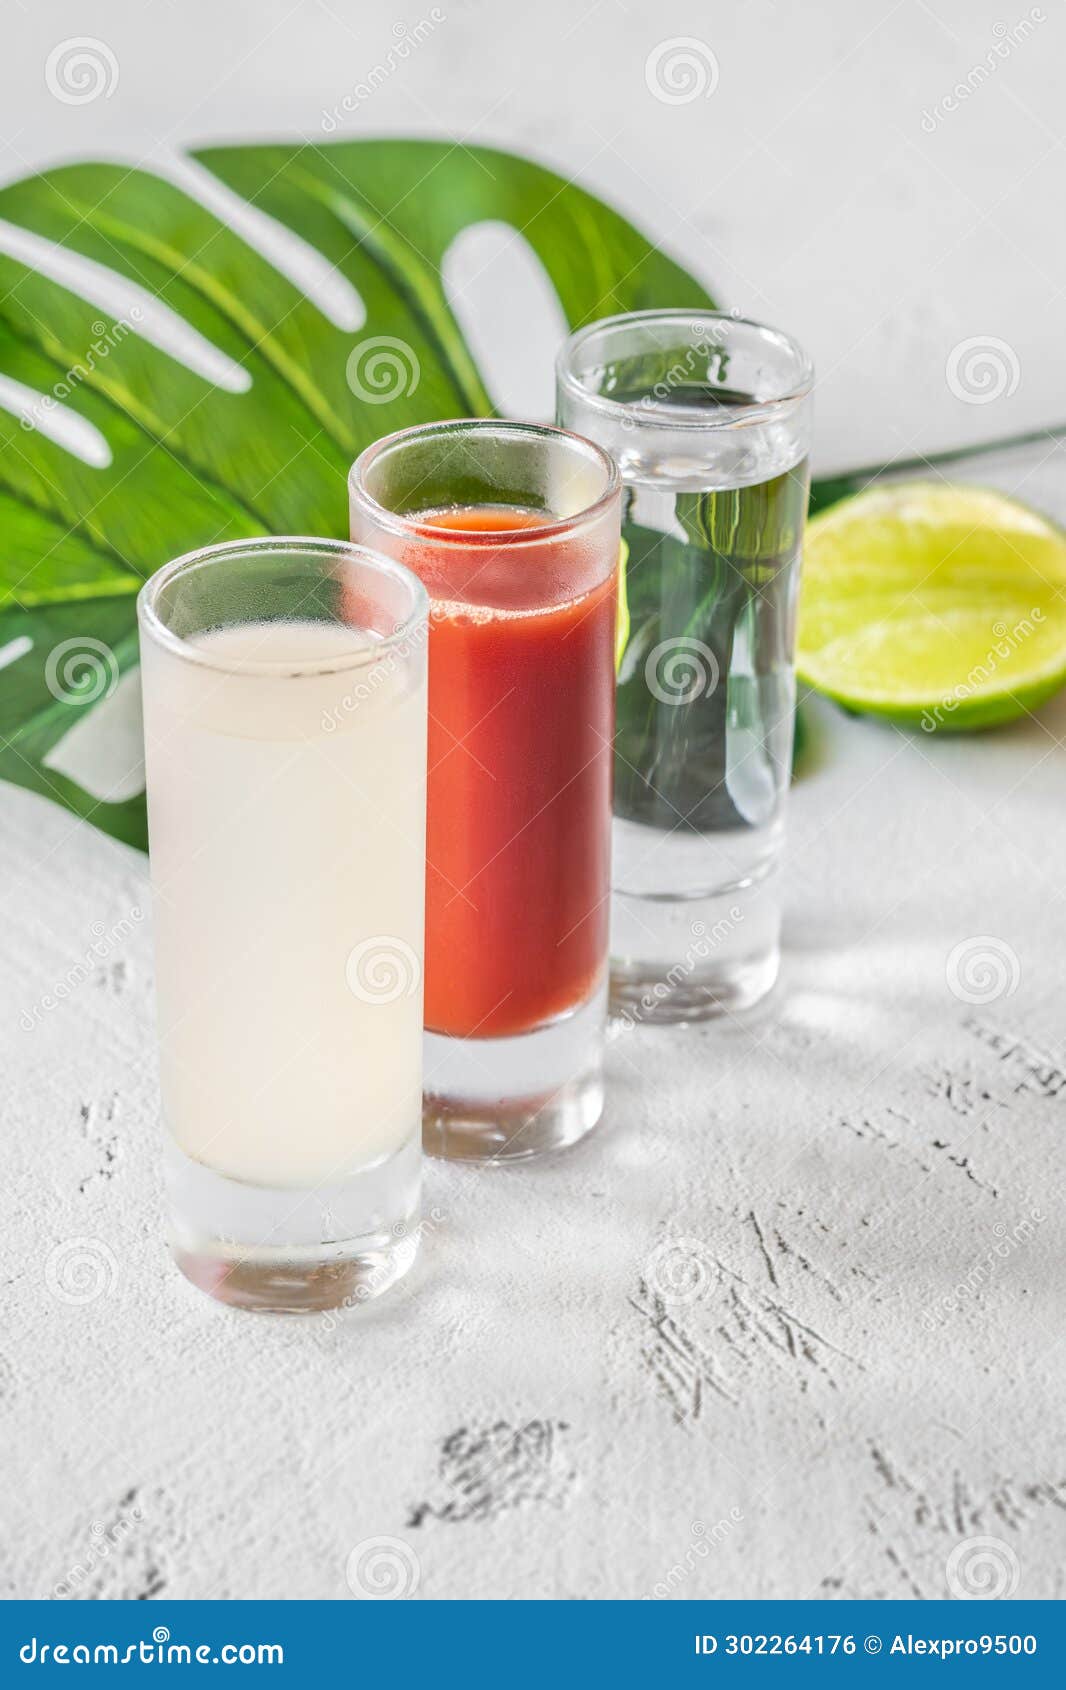 shots of bandera cocktail